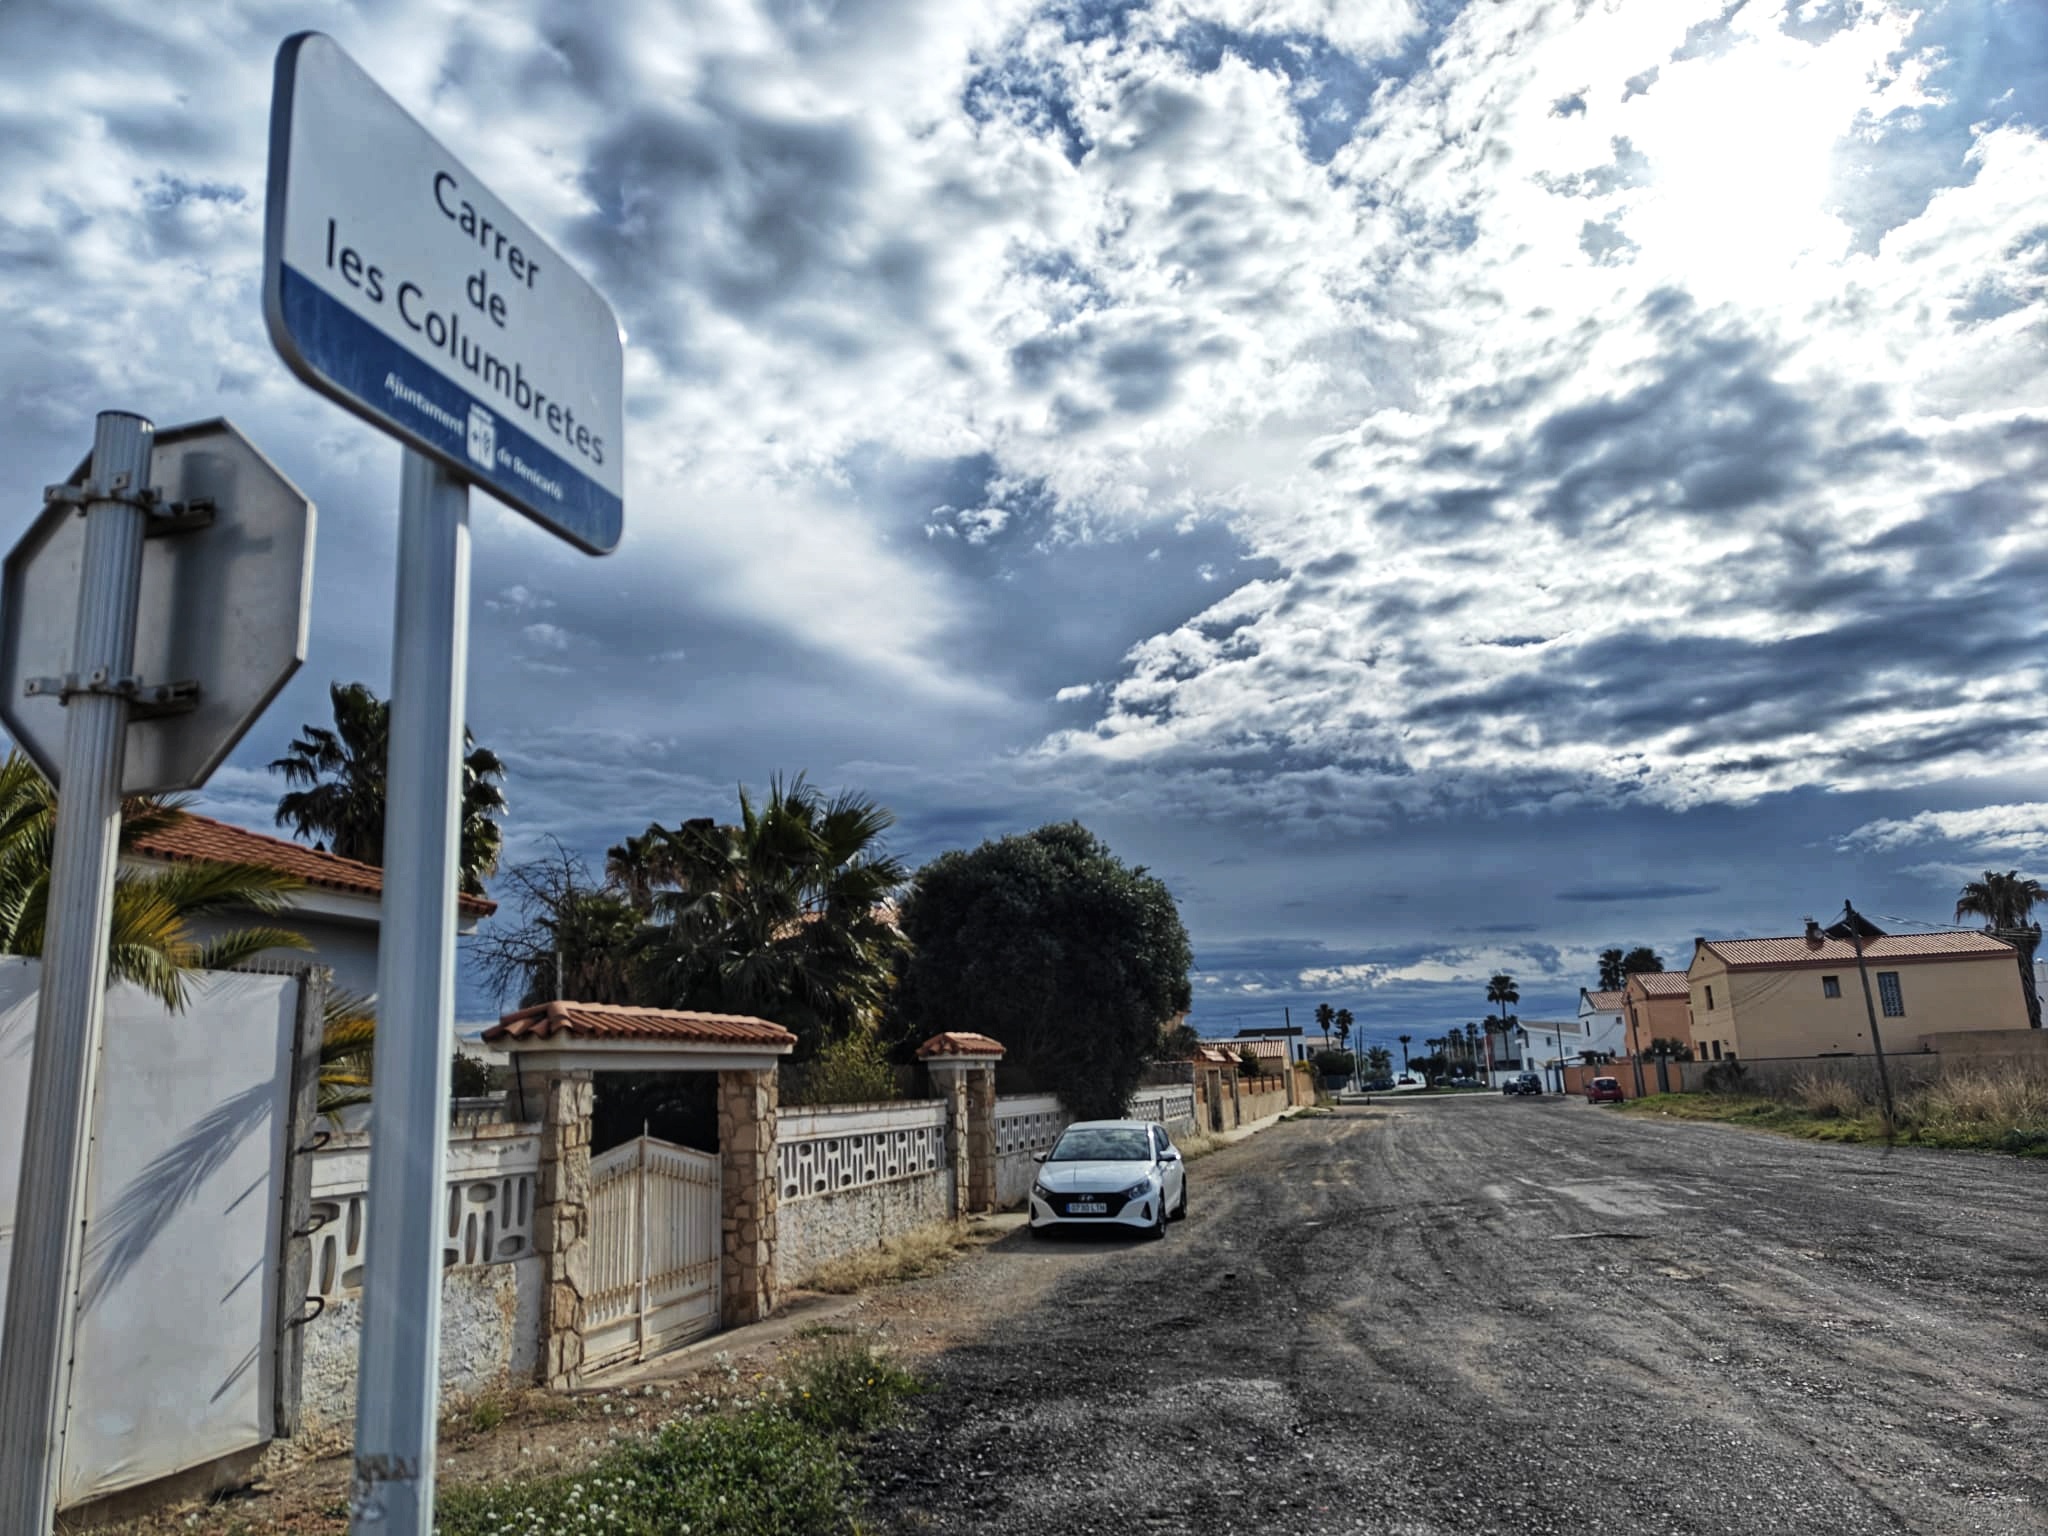 L’Ajuntament de Benicarló reimpulsa amb els veïns la urbanització del carrer de les Columbretes